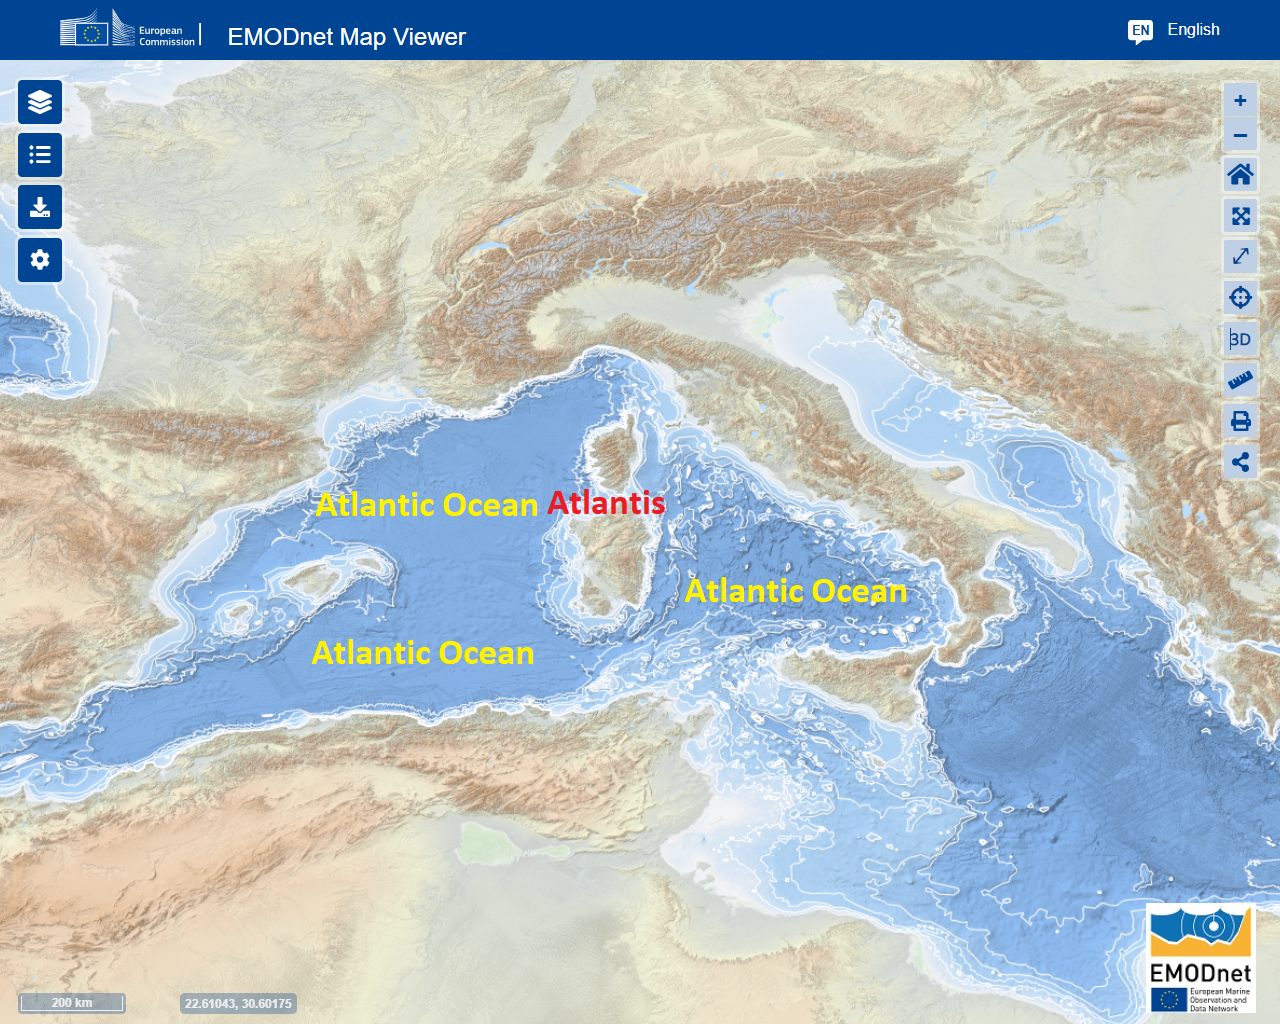 La Atlántida en el Océano Atlántico Mesolítico ahora llamado Mar Mediterráneo